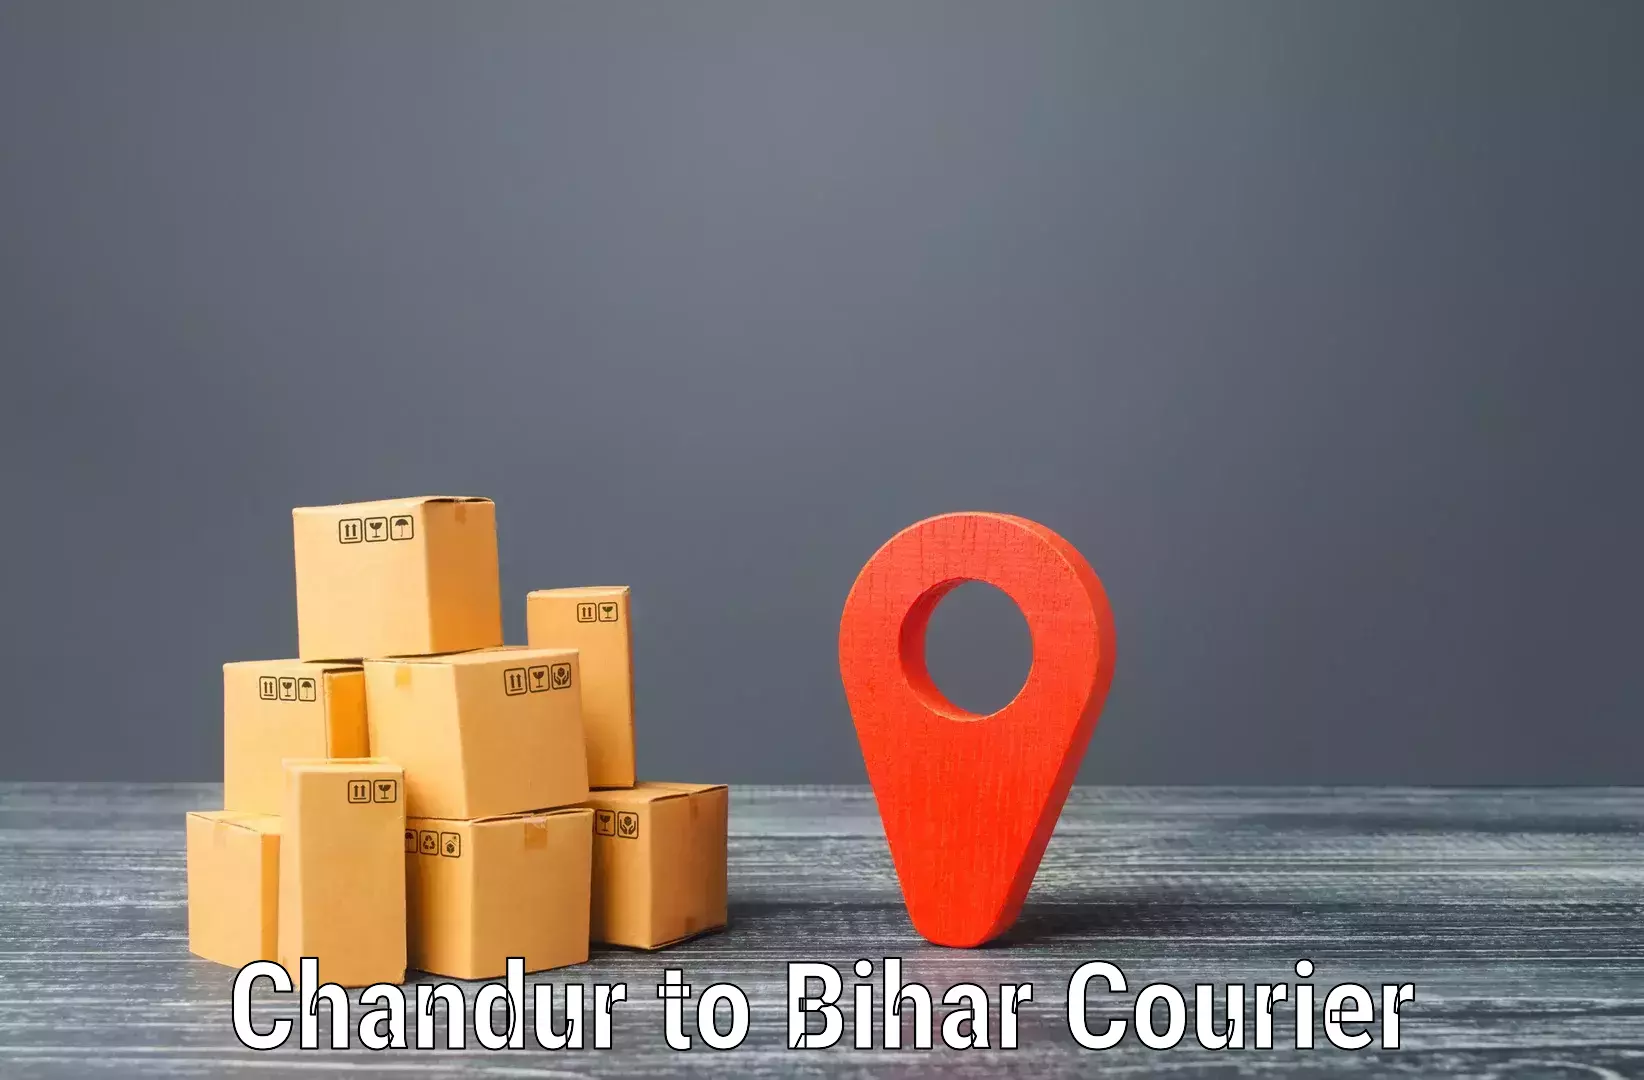 Courier service comparison Chandur to Sandesh